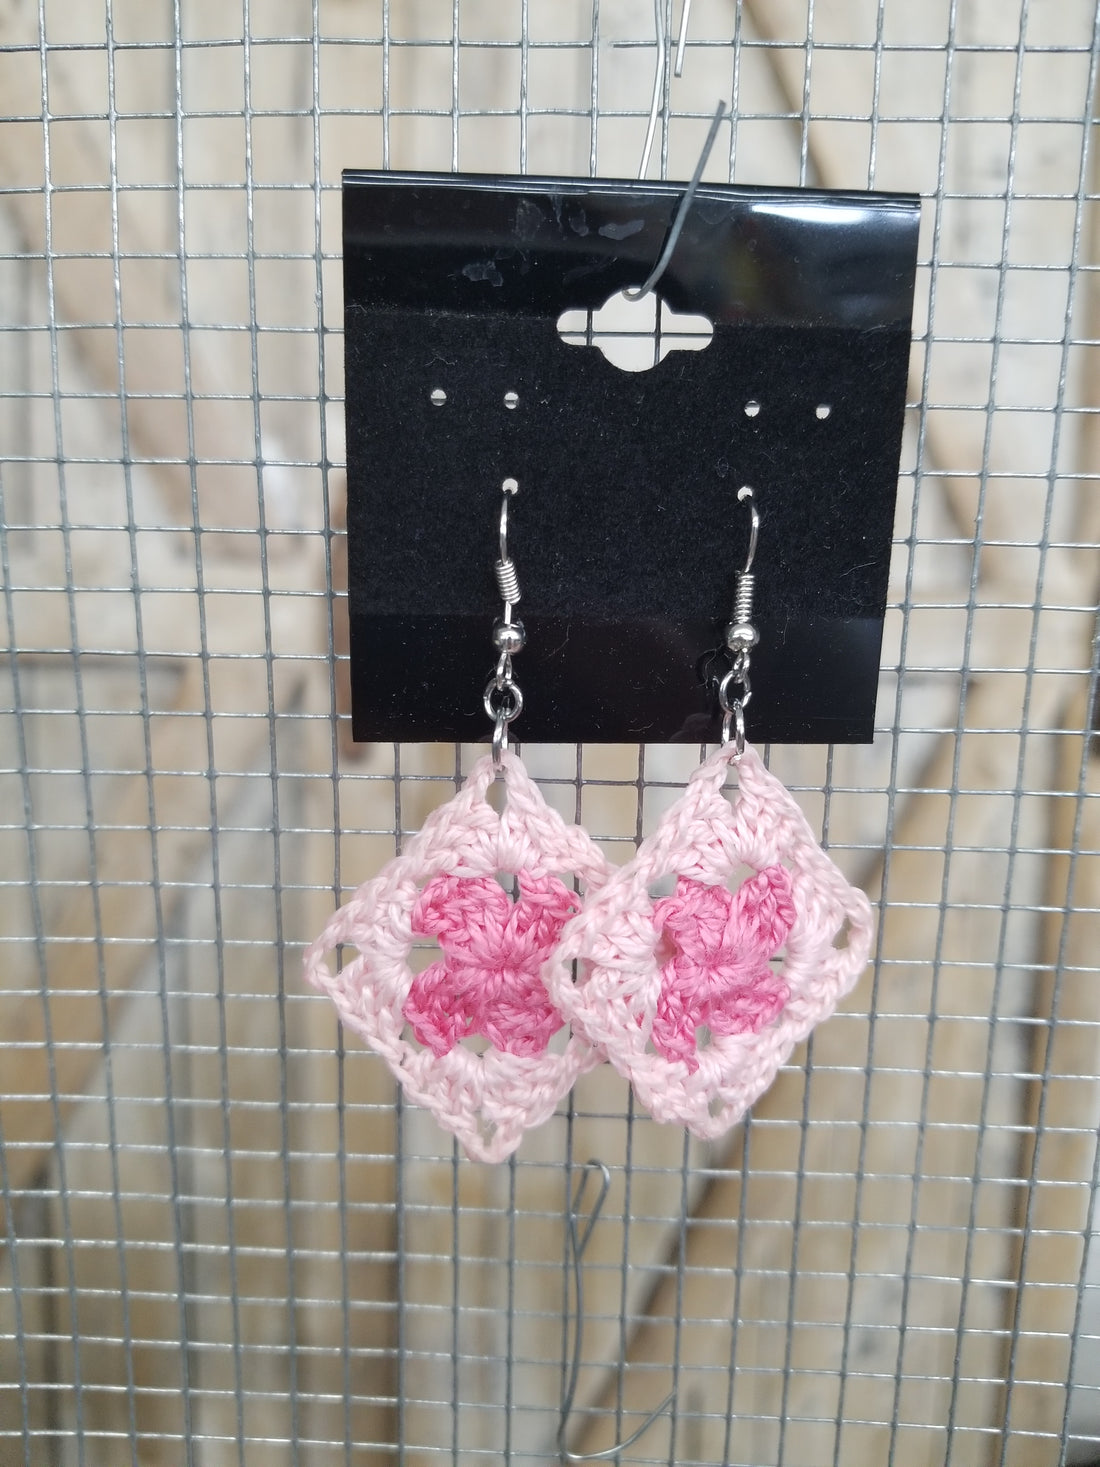 Multi Pink Diamond Crochet Earrings